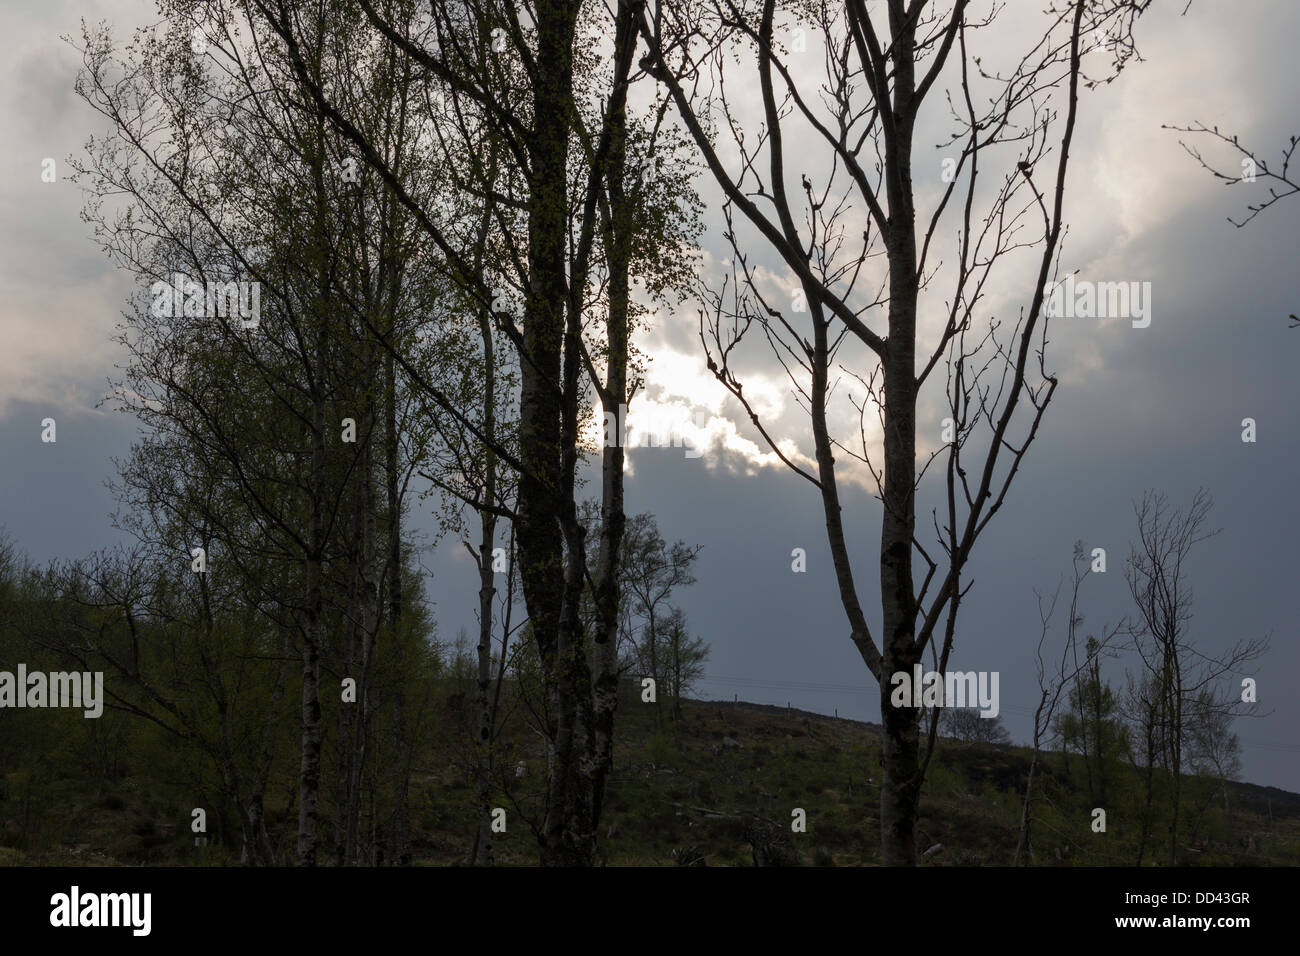 Bäume am Hang des Hügels mit Wolken im Hintergrund, in den schottischen Highlands in der Nähe von einem Loch. Licht, das hinter Wolke Stockfoto